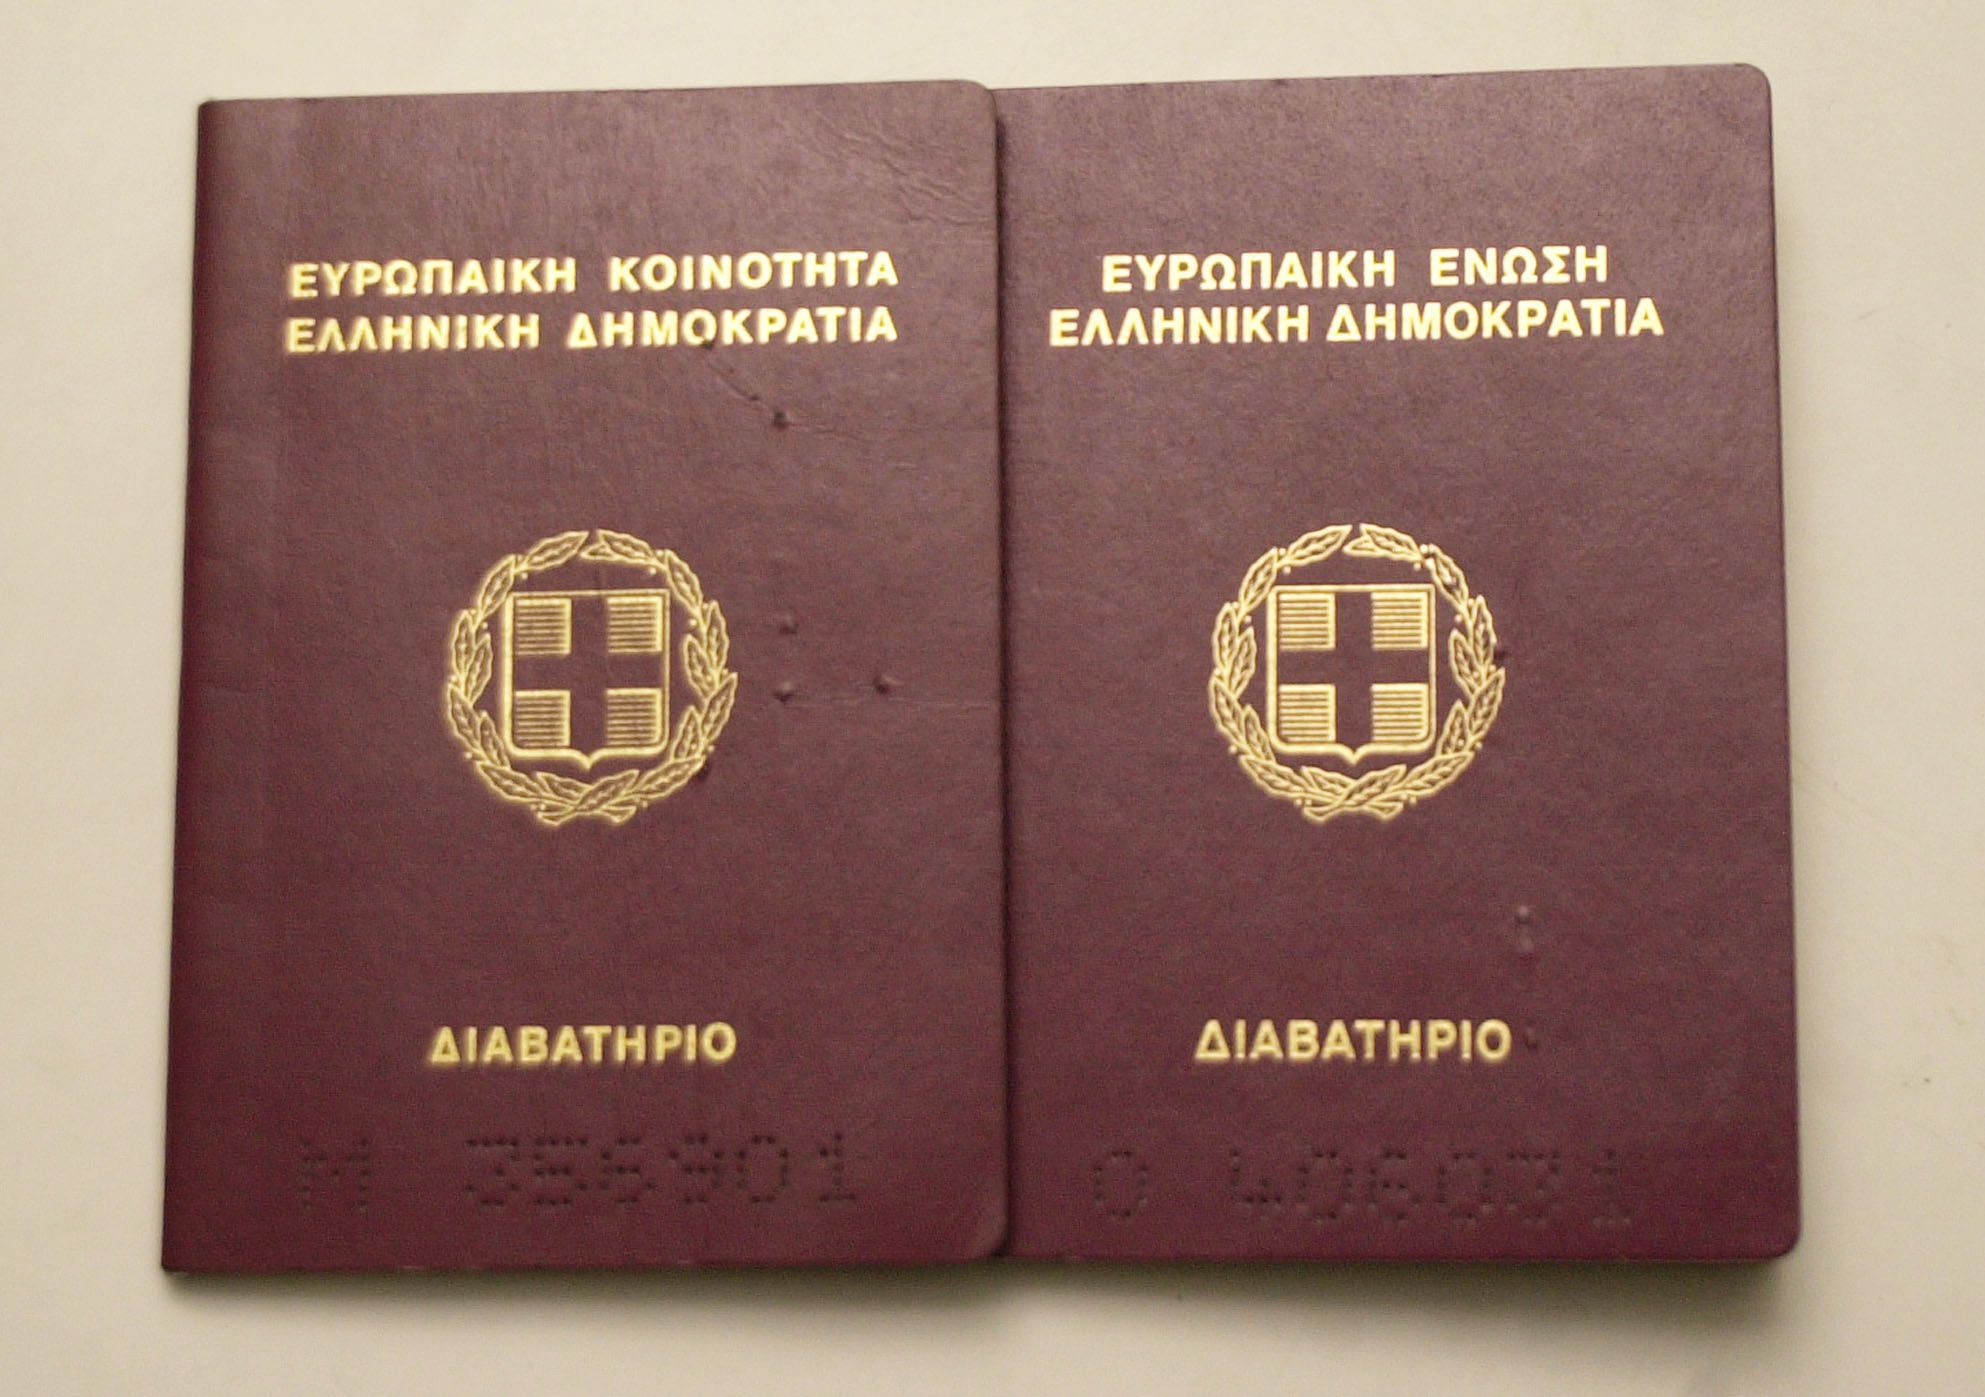 Αναγκαία η επανεξέταση του τρόπου αναγραφής στοιχείων στα διαβατήρια